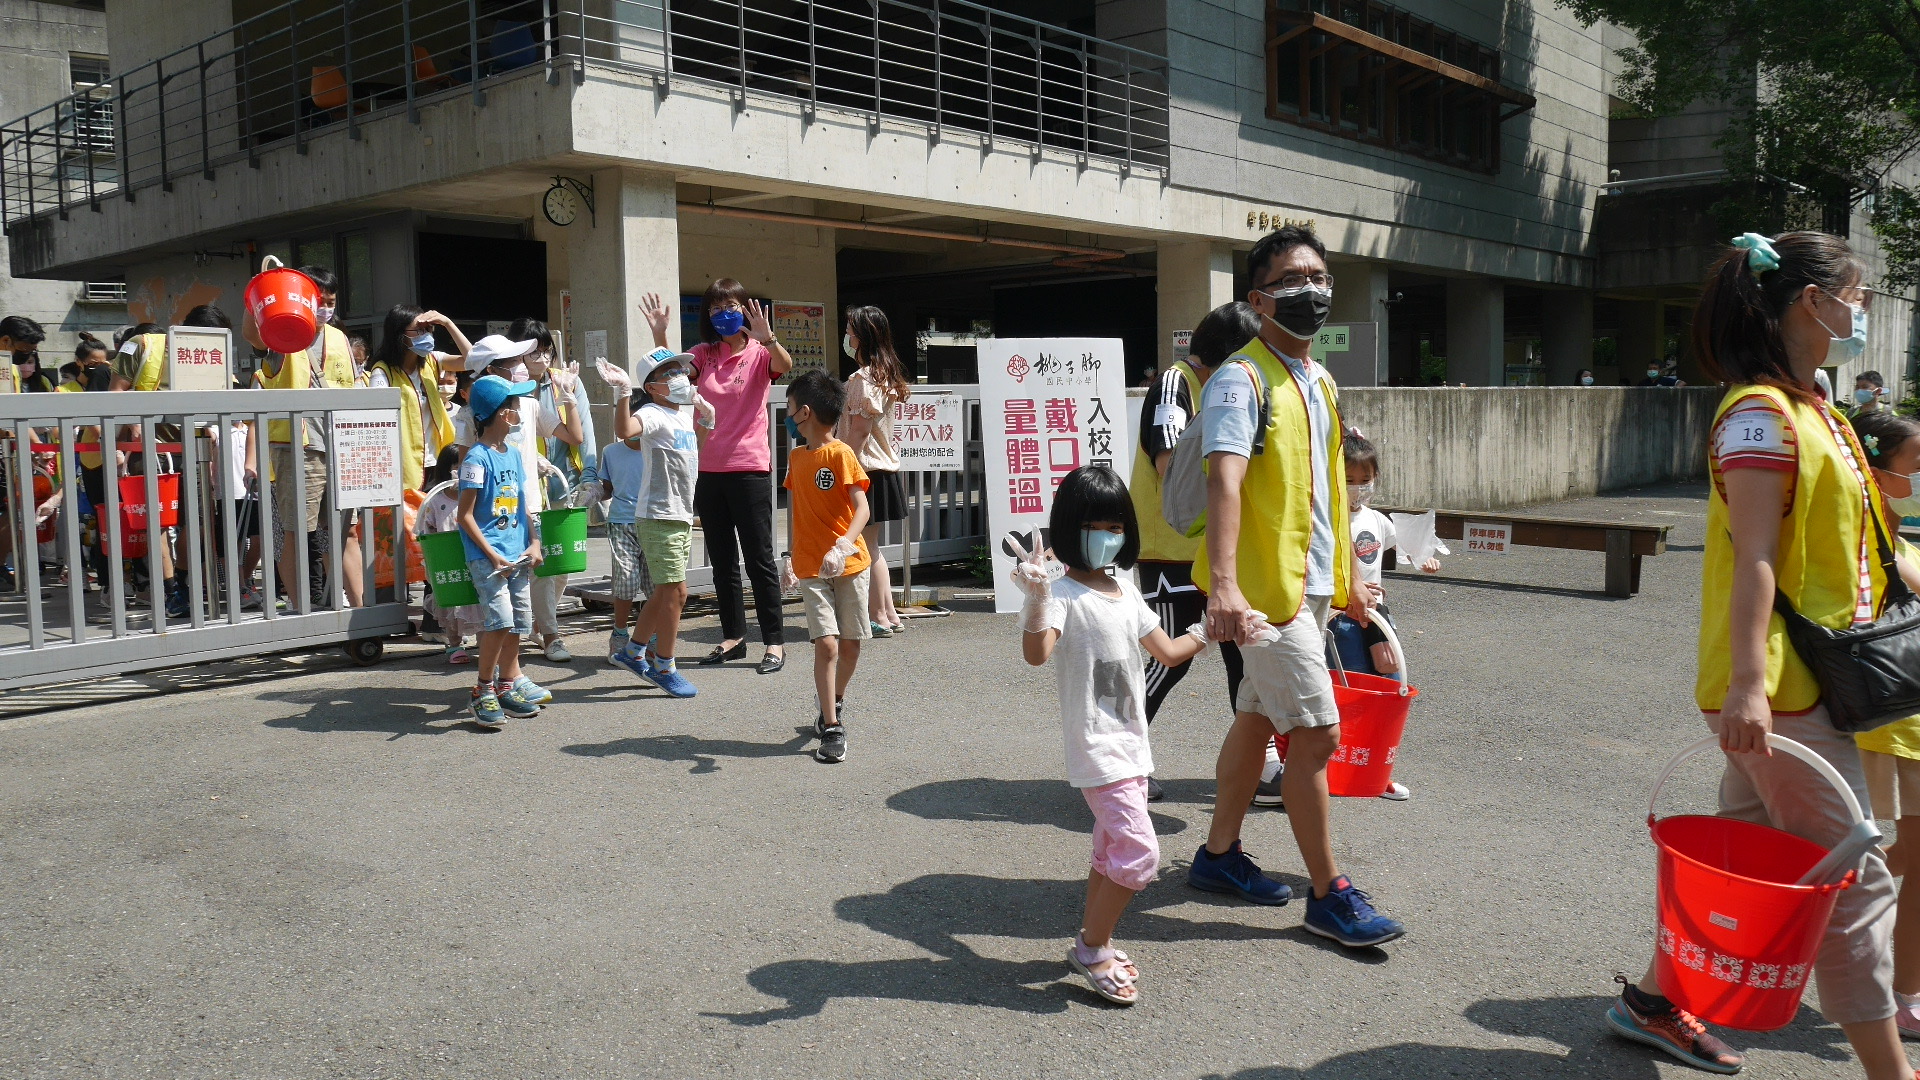 響應世界環境清潔日 近300親師生「愛桃子.淨校園」活動